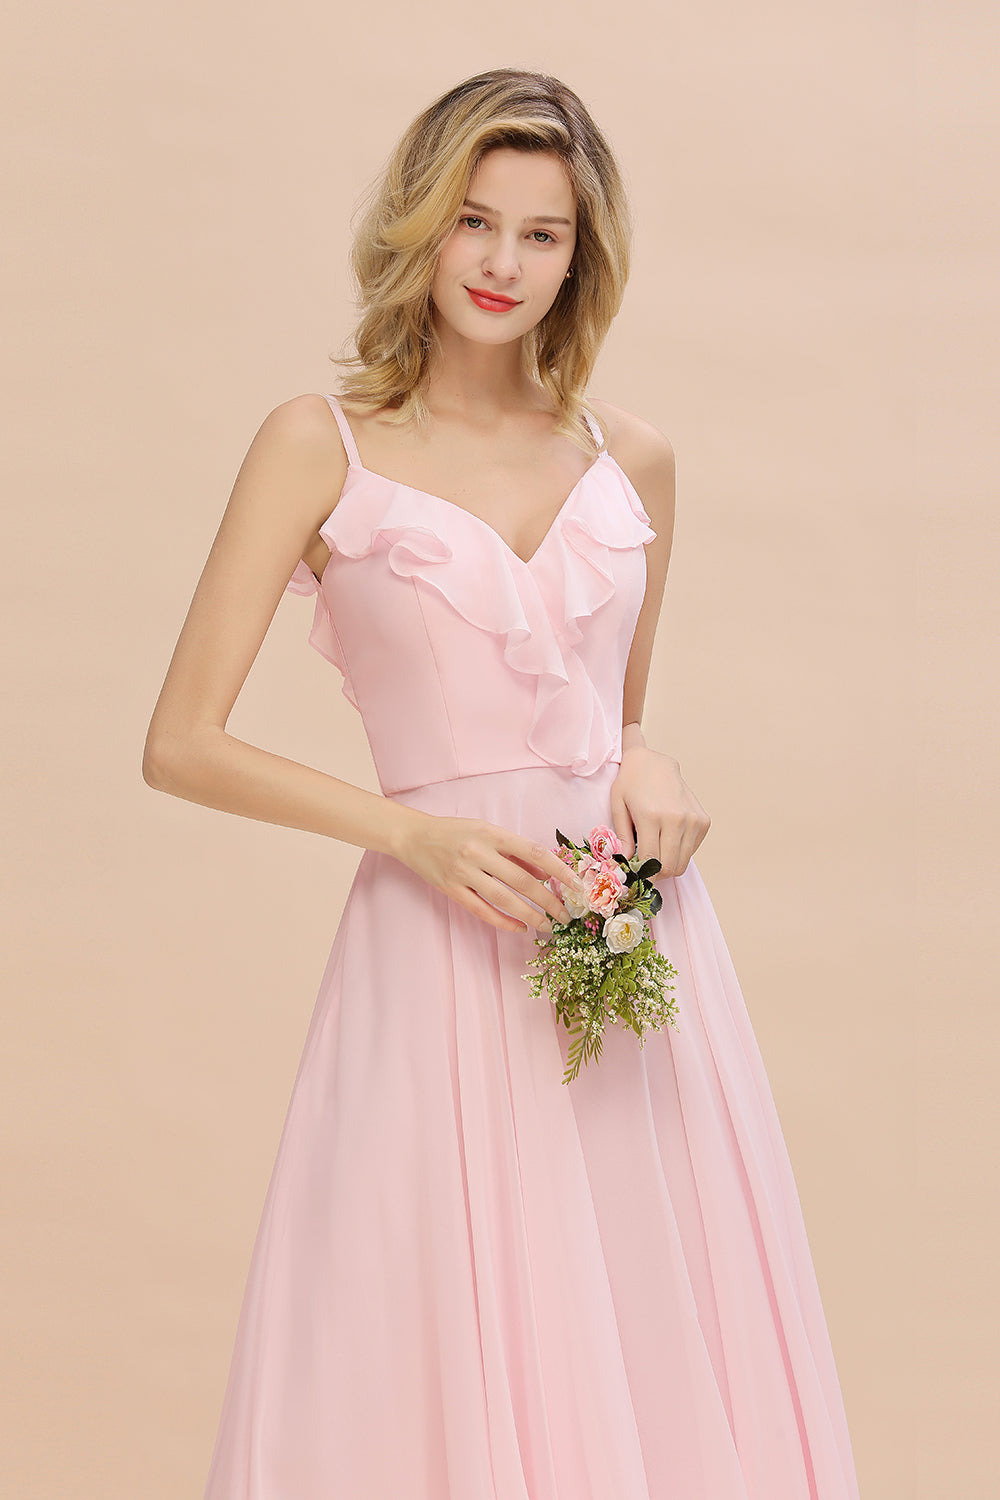 Stylish Draped V-Neck Pink Chiffon Bridesmaid Dress with Spaghetti Straps-27dress